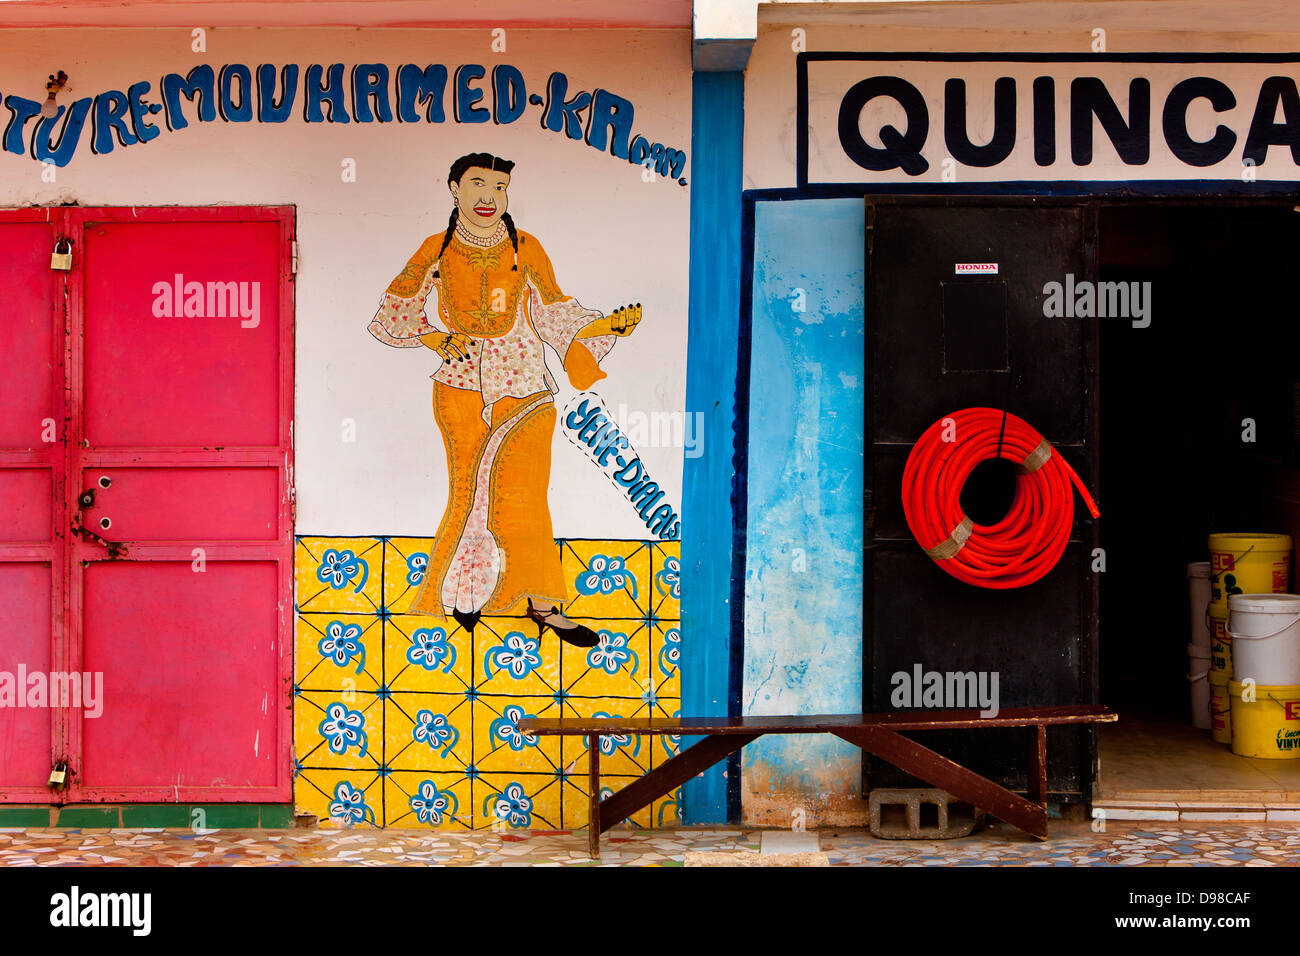 Senegal "Toubab Dialaw" shop Stockfoto